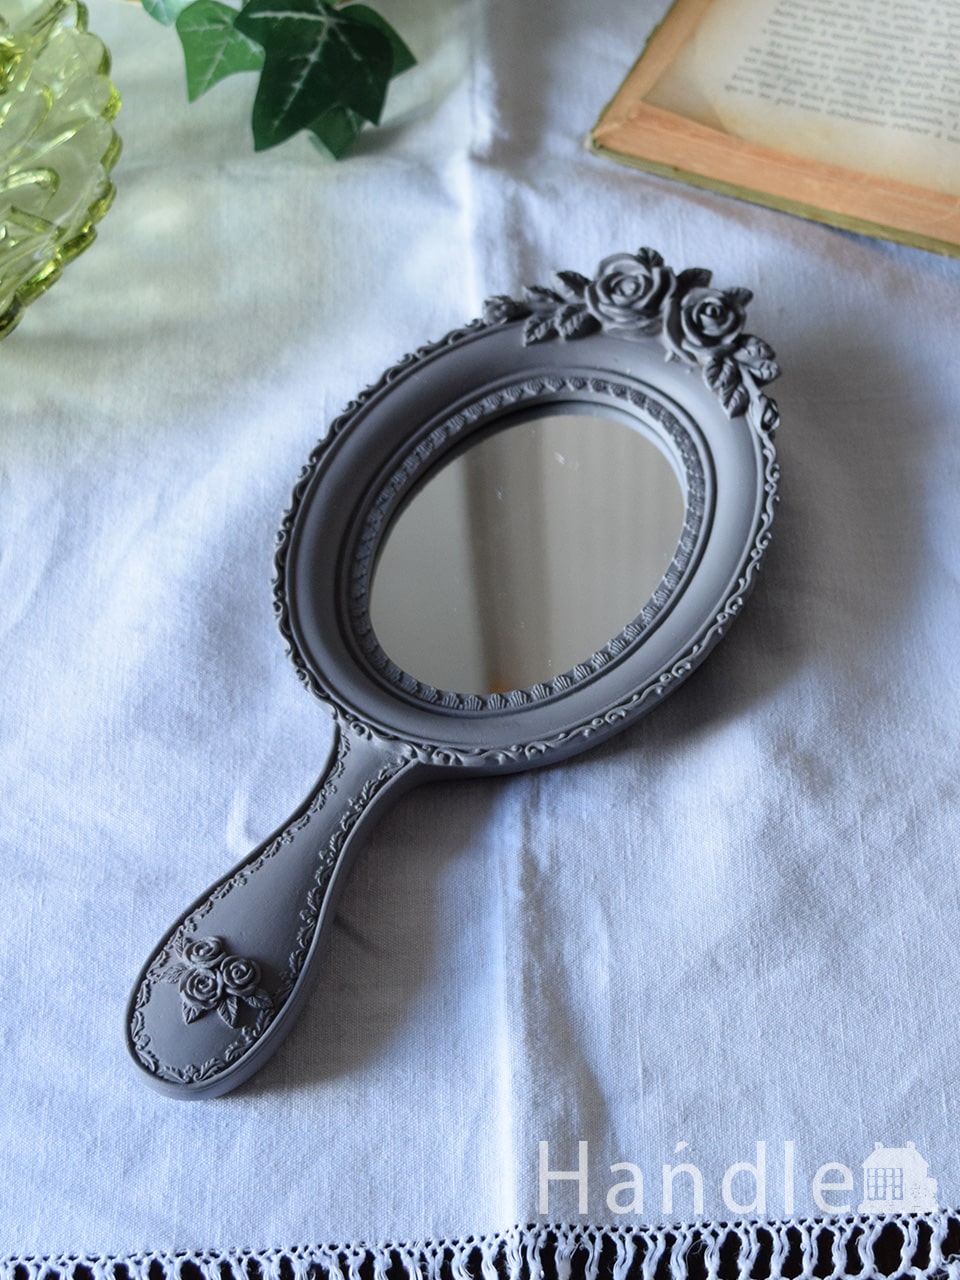 アンティーク風のおしゃれな鏡、壁かけにも出来る上品なハンドミラー (n8-132)